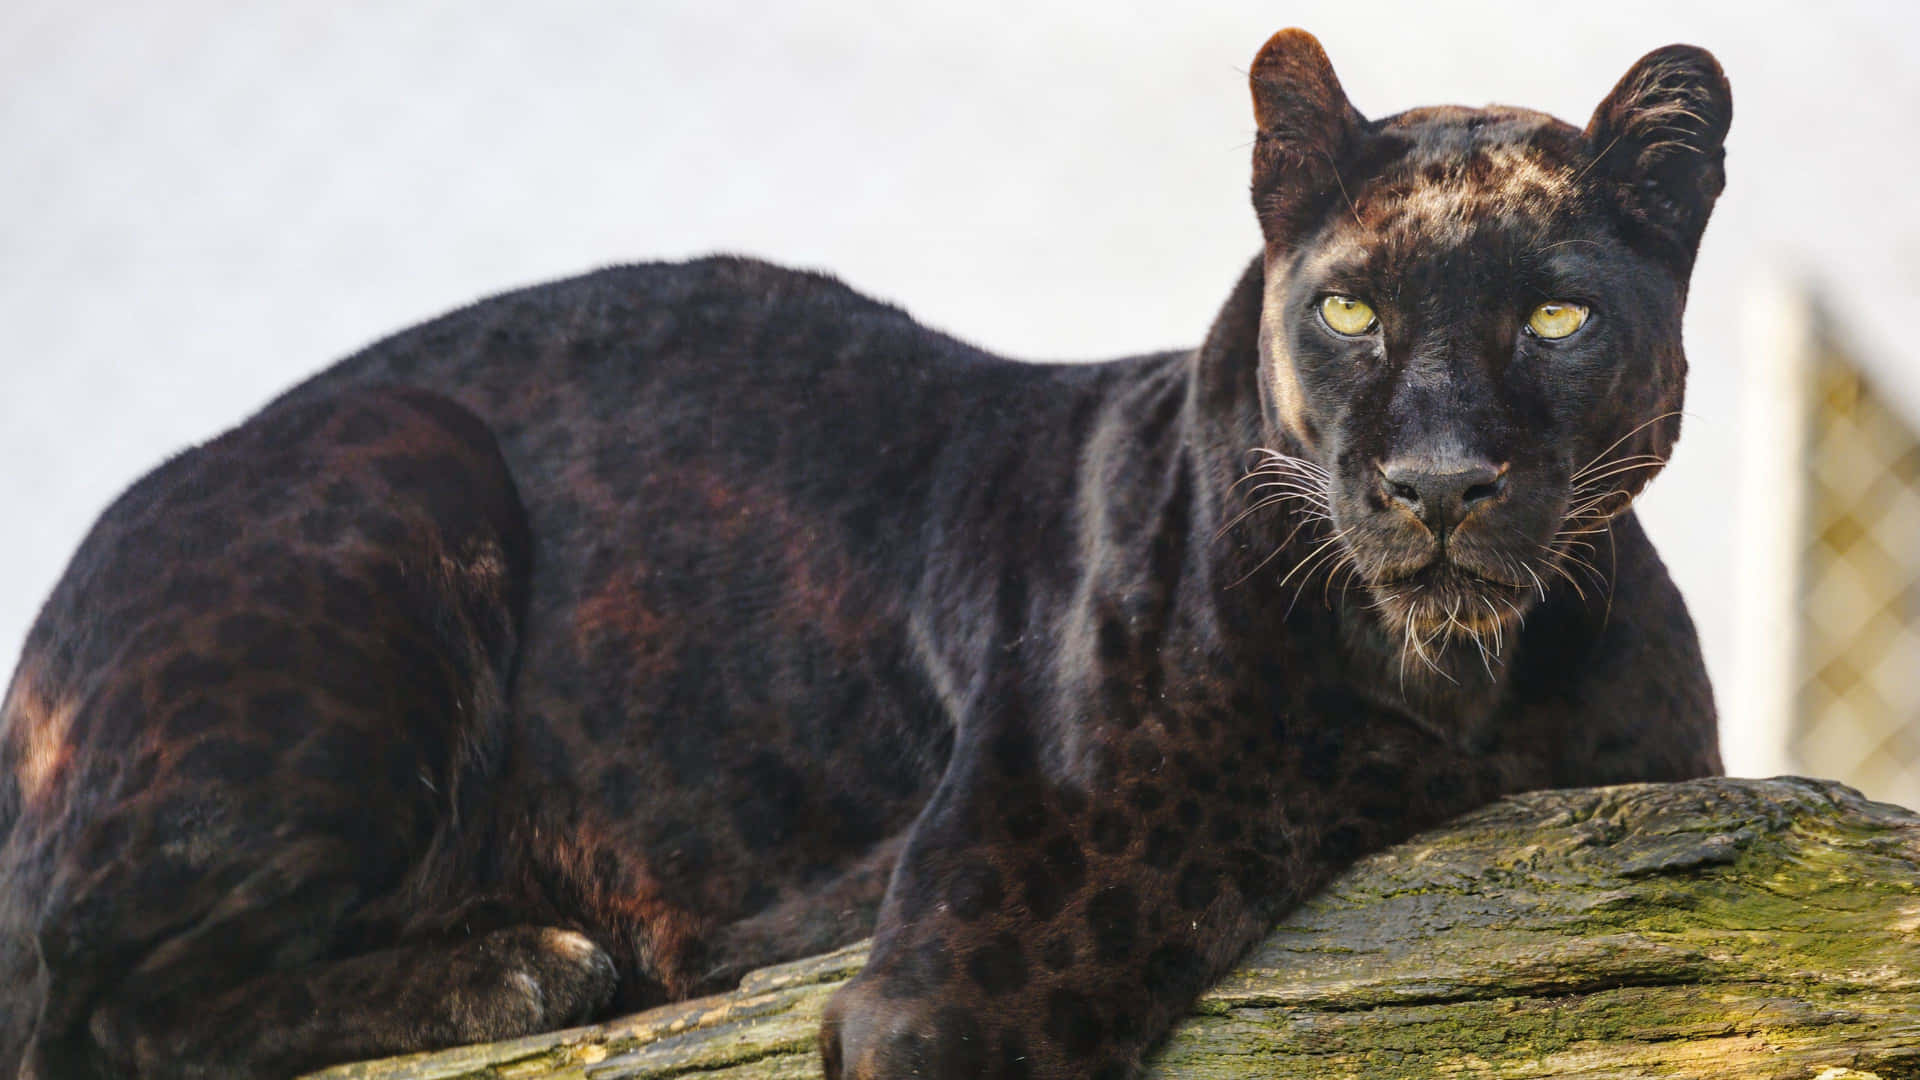 "Close Up of a Majestic Black Jaguar" Wallpaper